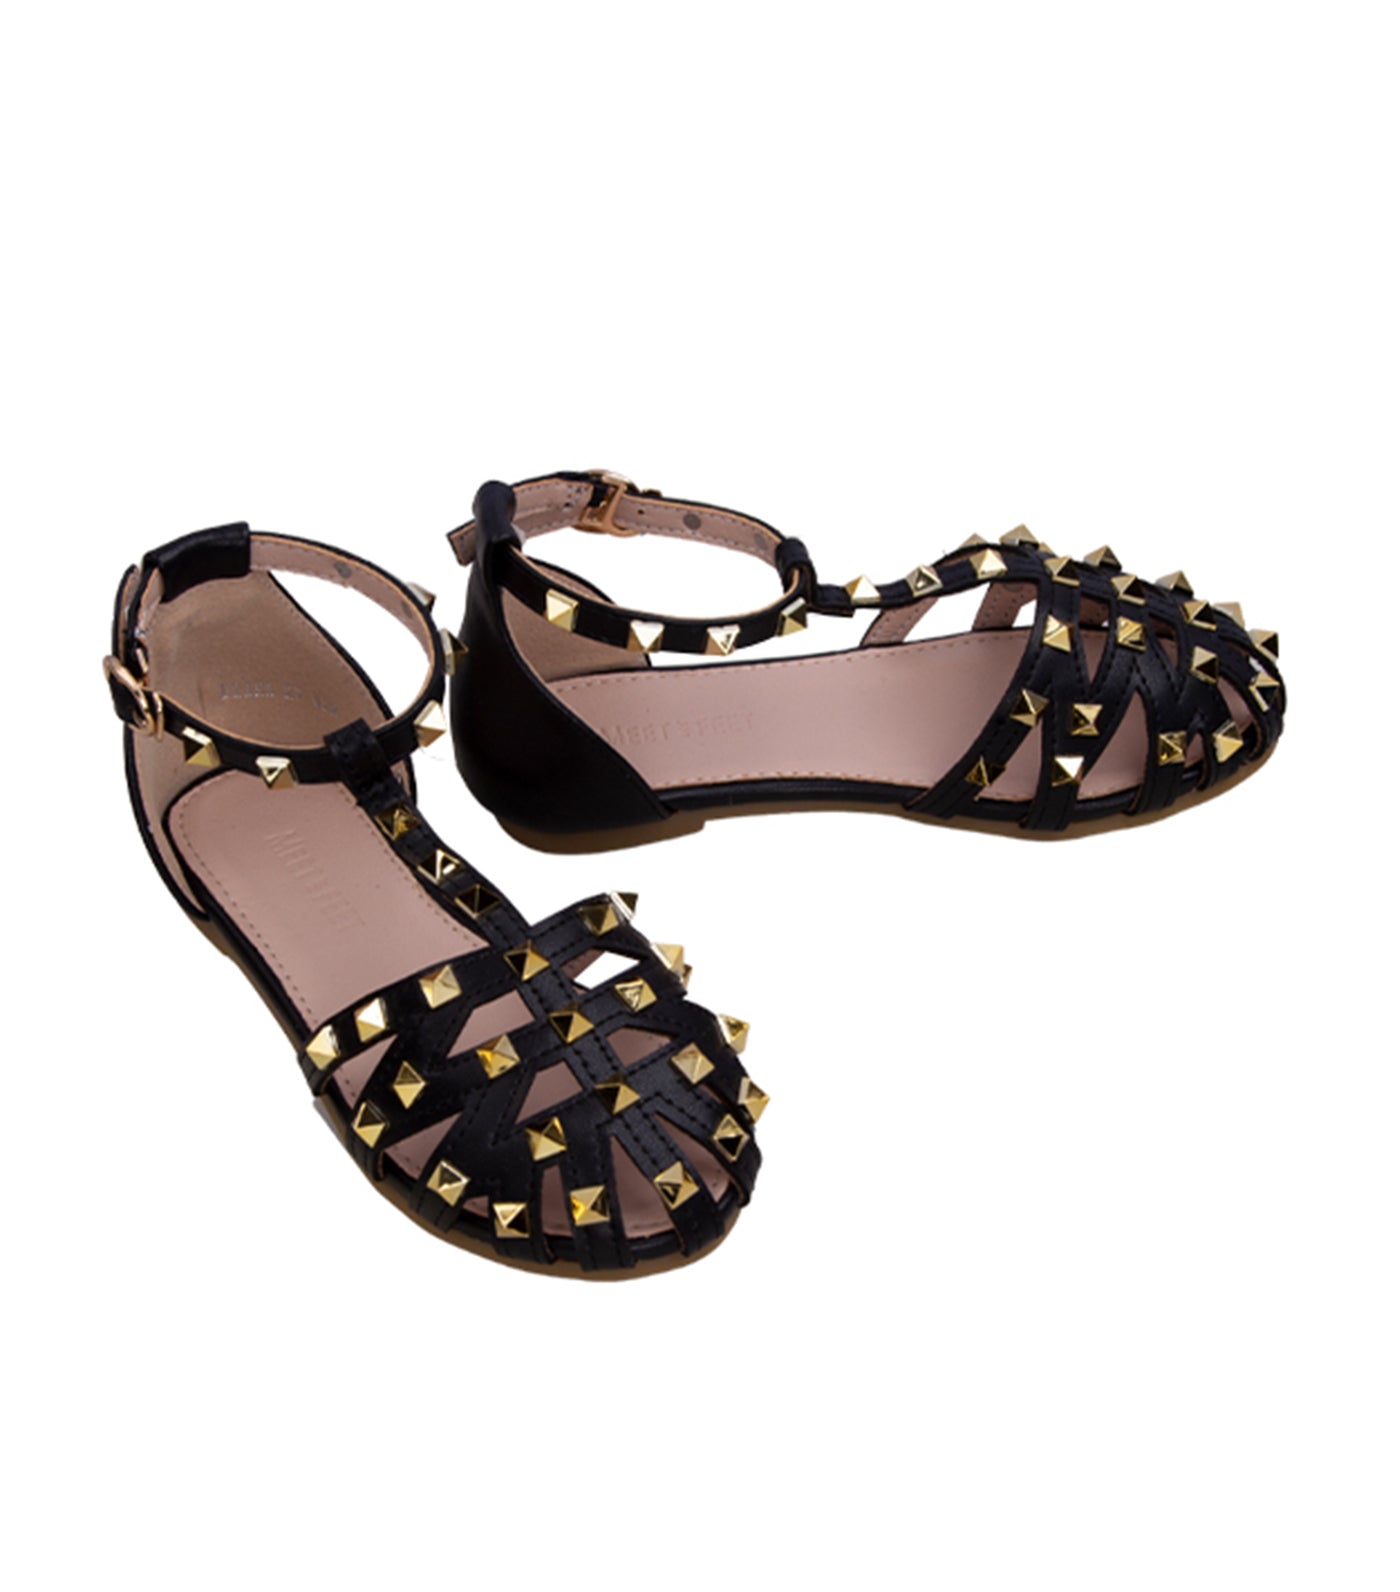 Brana Kids Sandals for Girls - Black